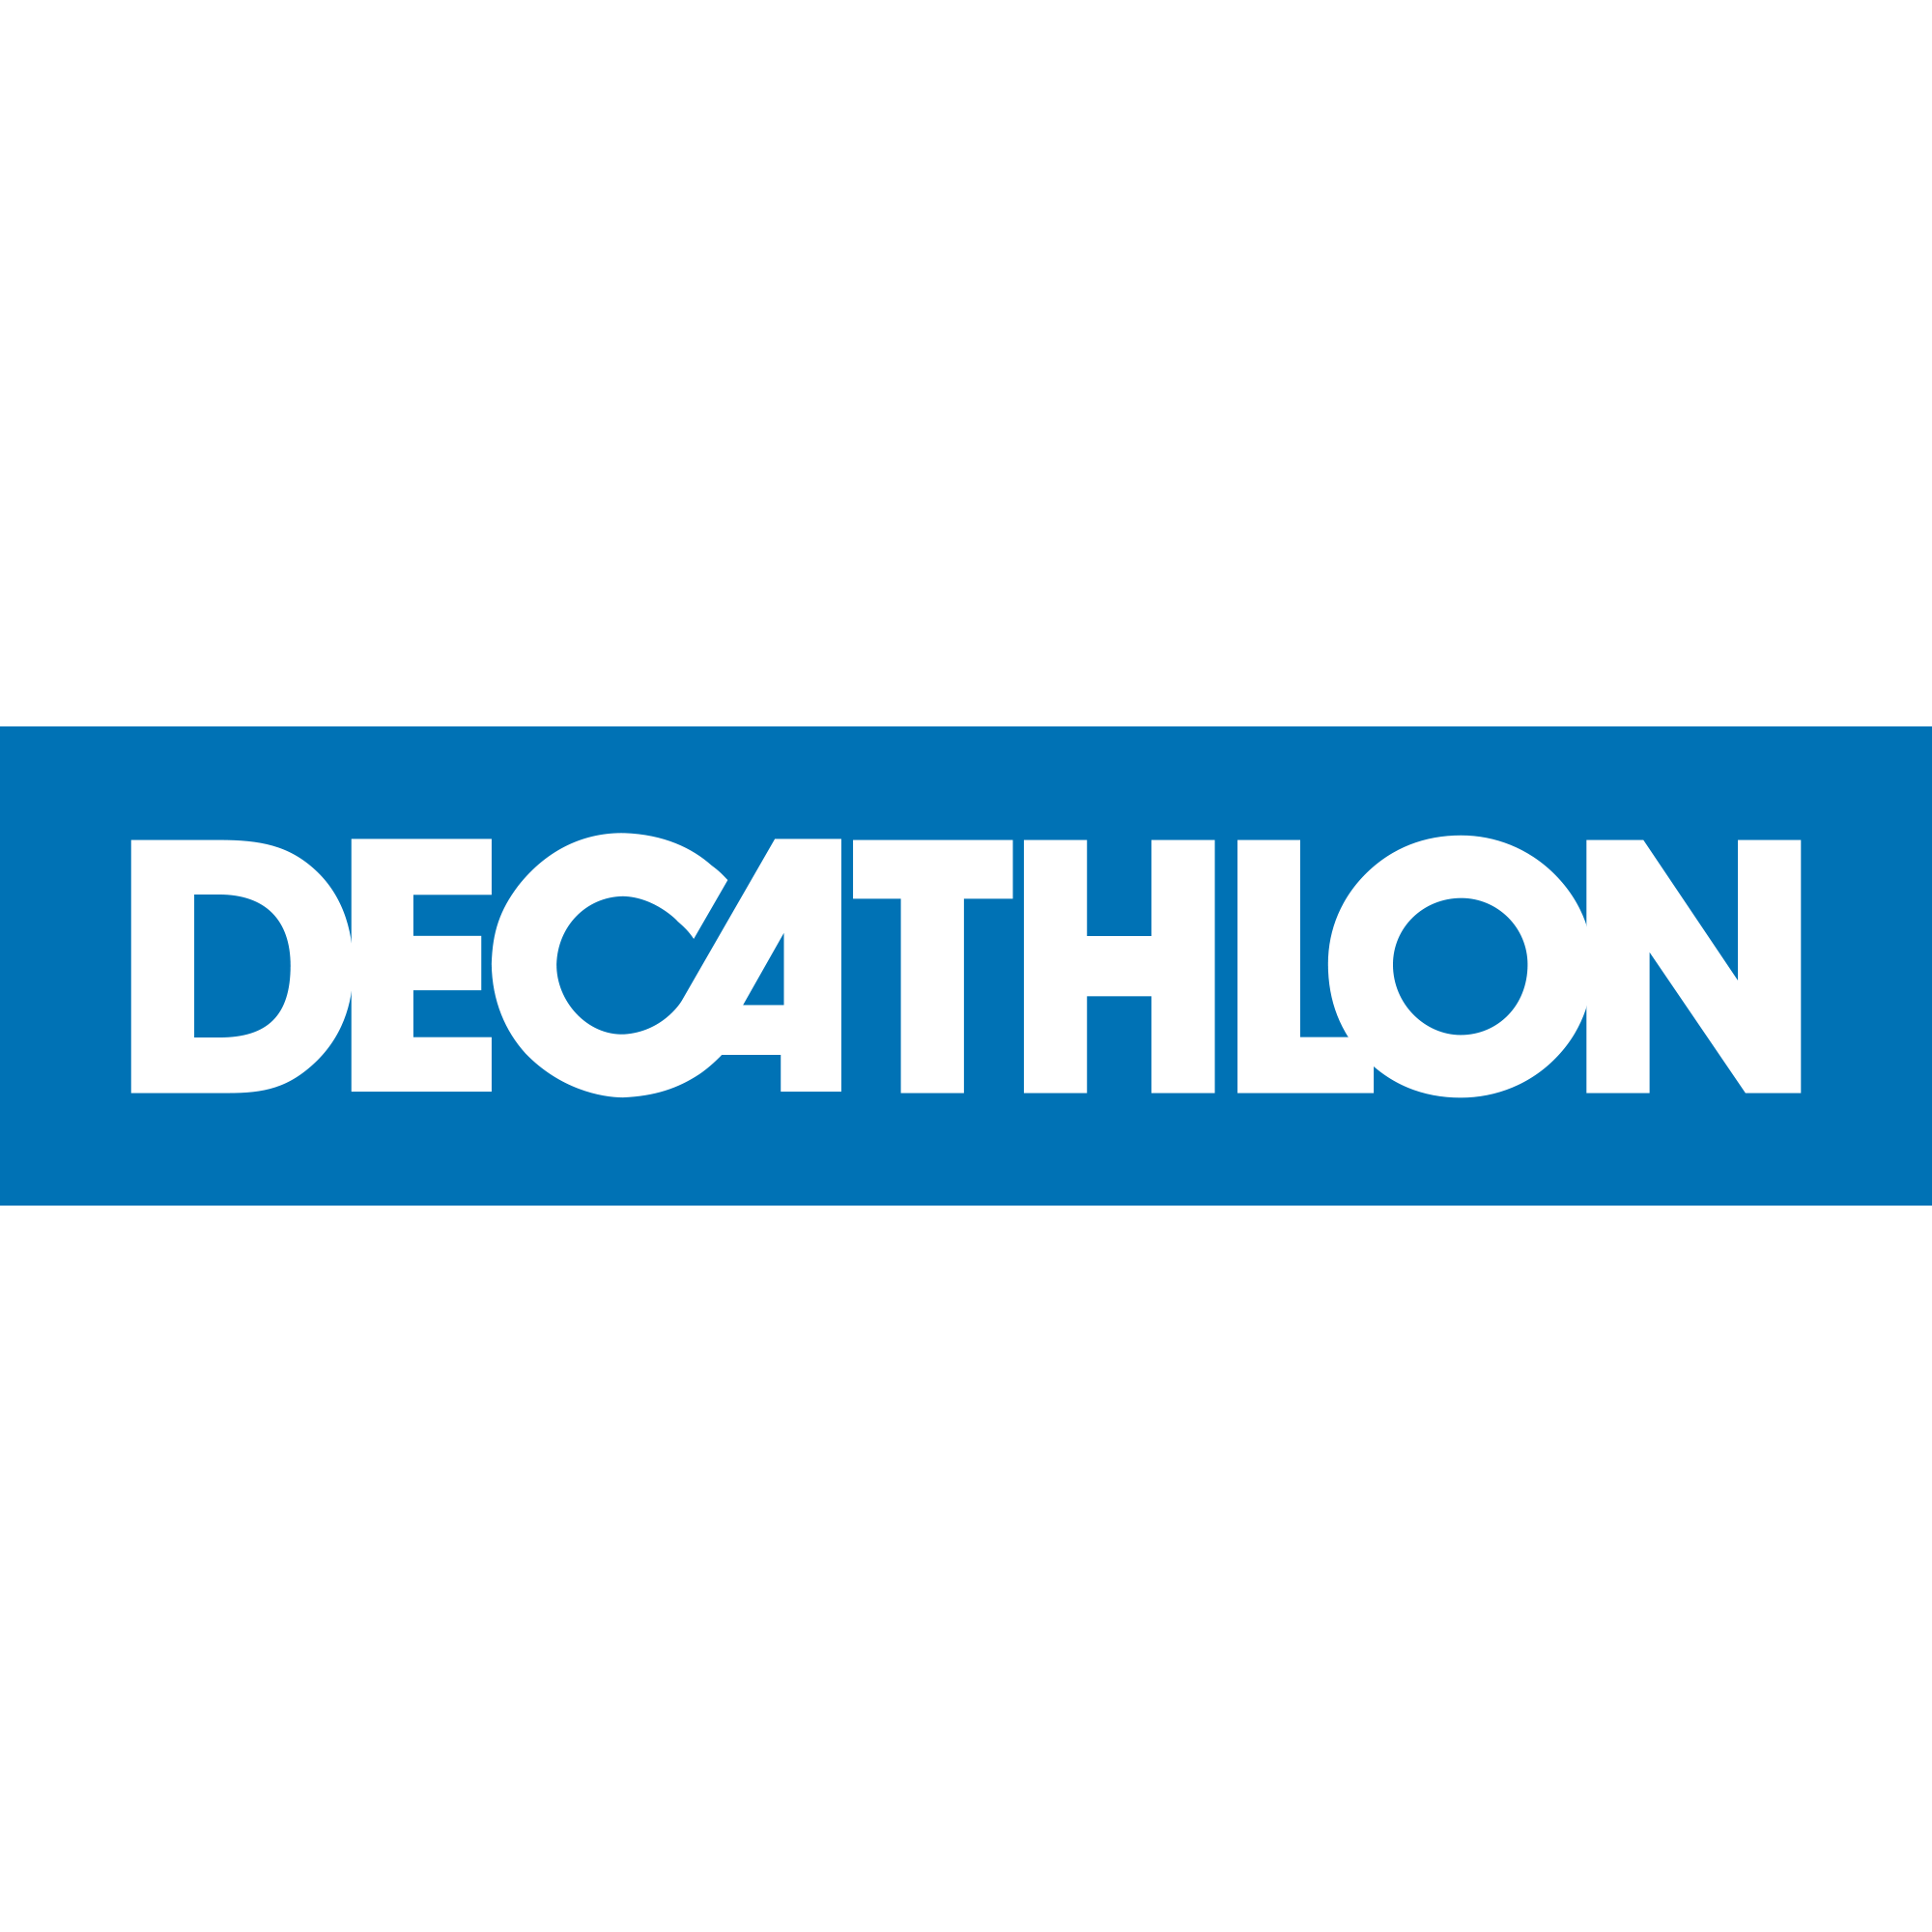 DECATHLON Essen in Essen - Logo